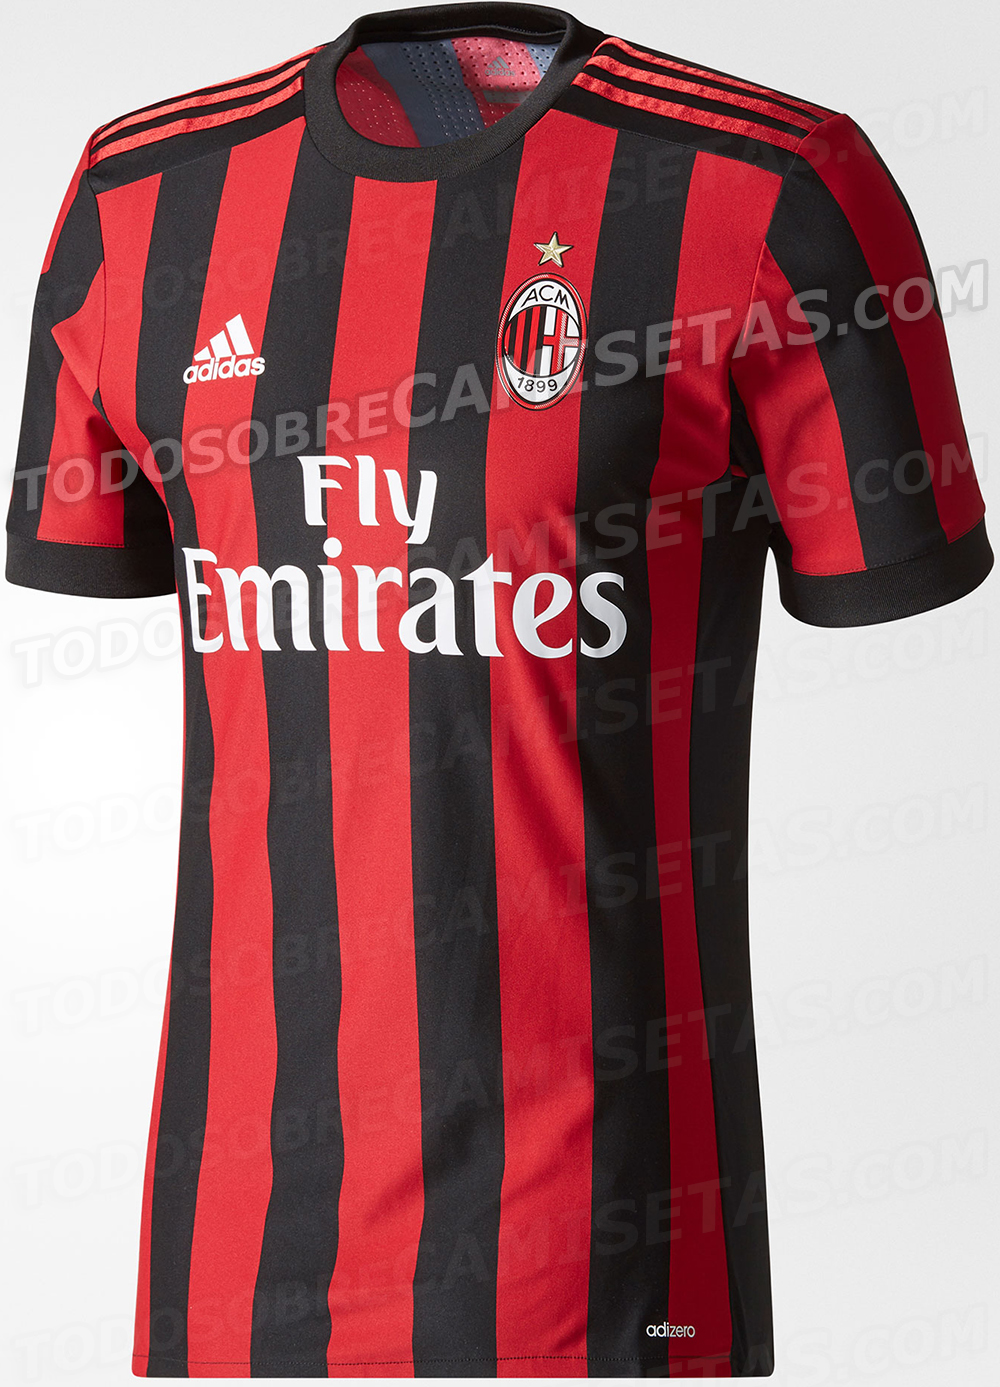 AC Milan 2017-18 adidas home kit